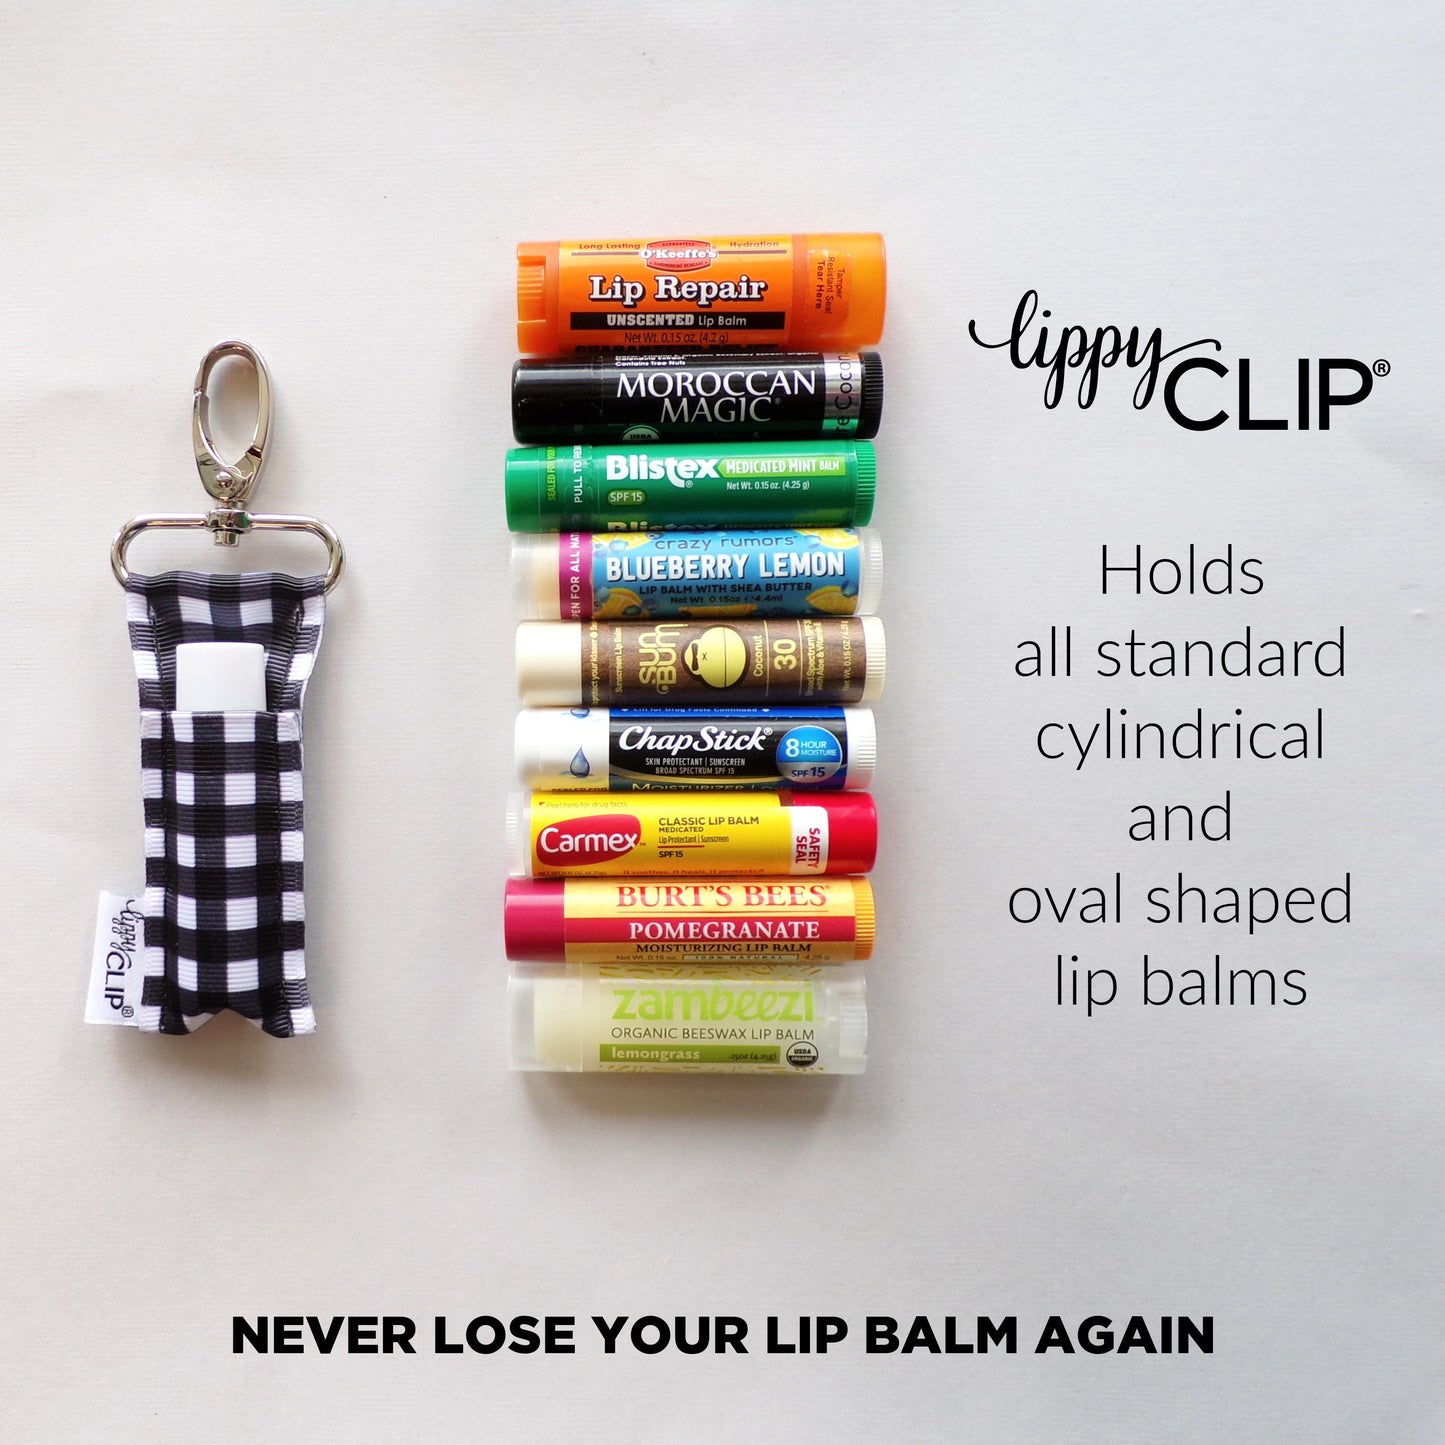 Lavender Fields LippyClip® Lip Balm Holder